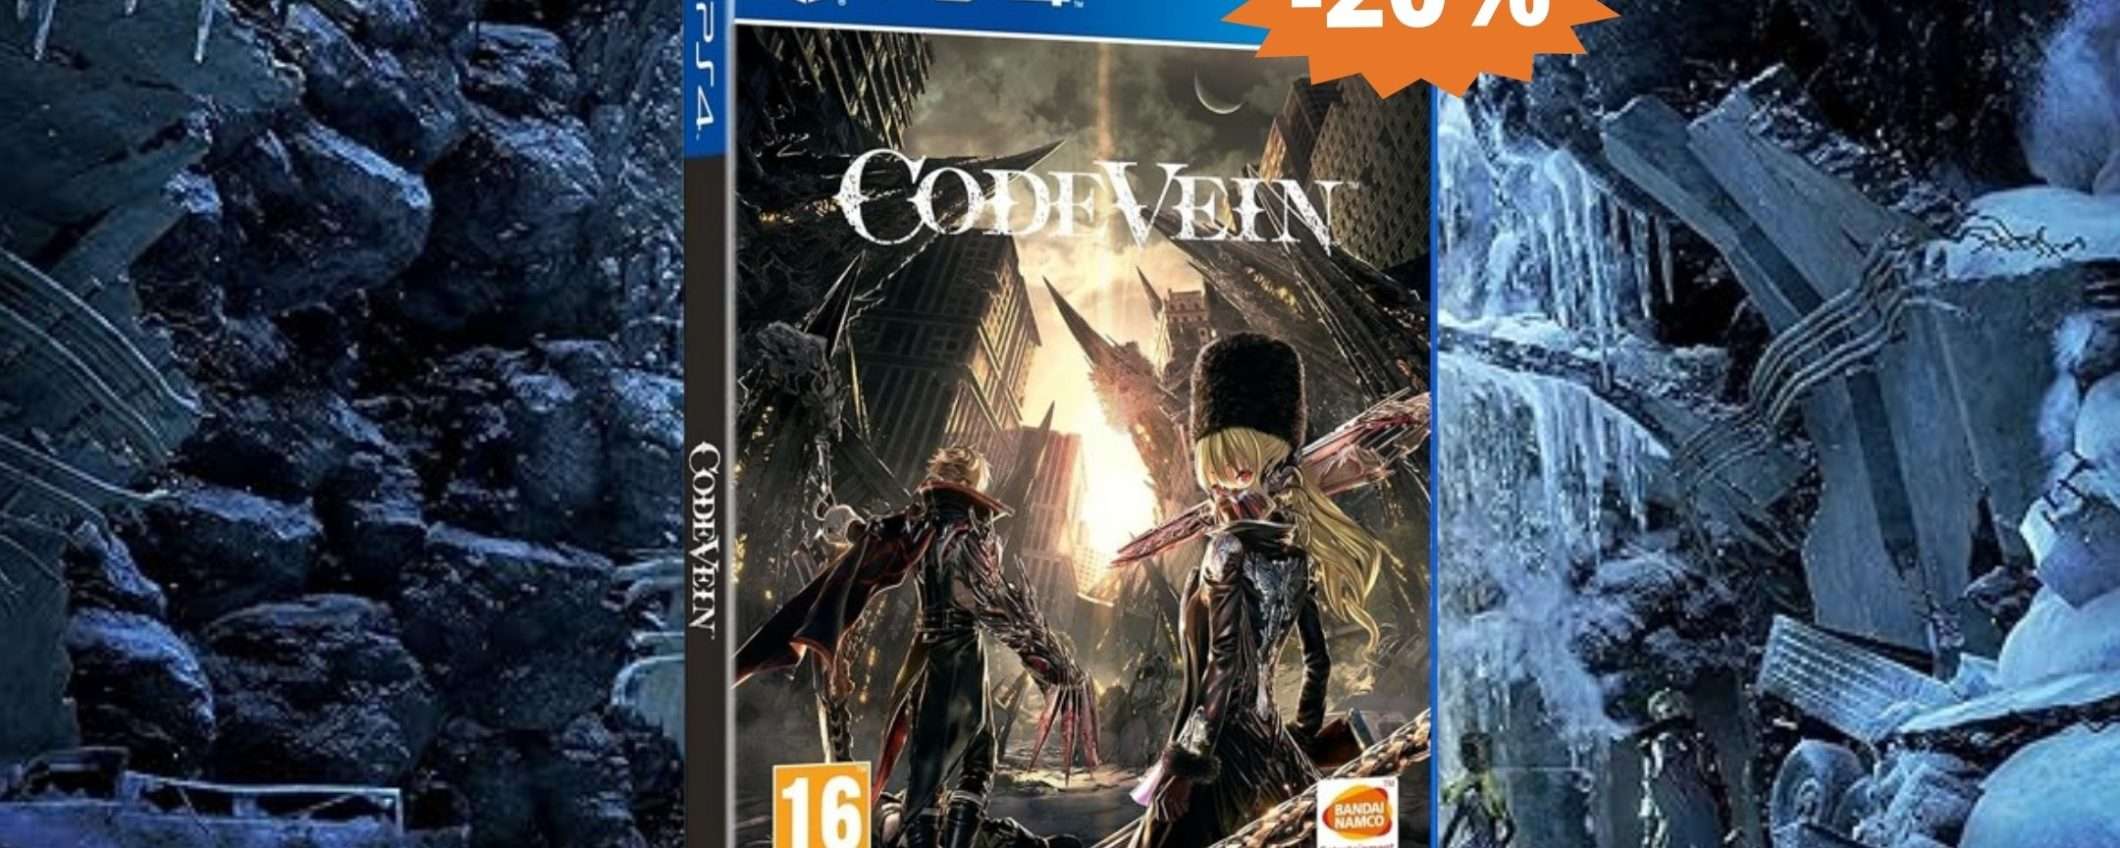 Code Vein per PS4: avventura in stile ANIME, da non perdere (-20%)